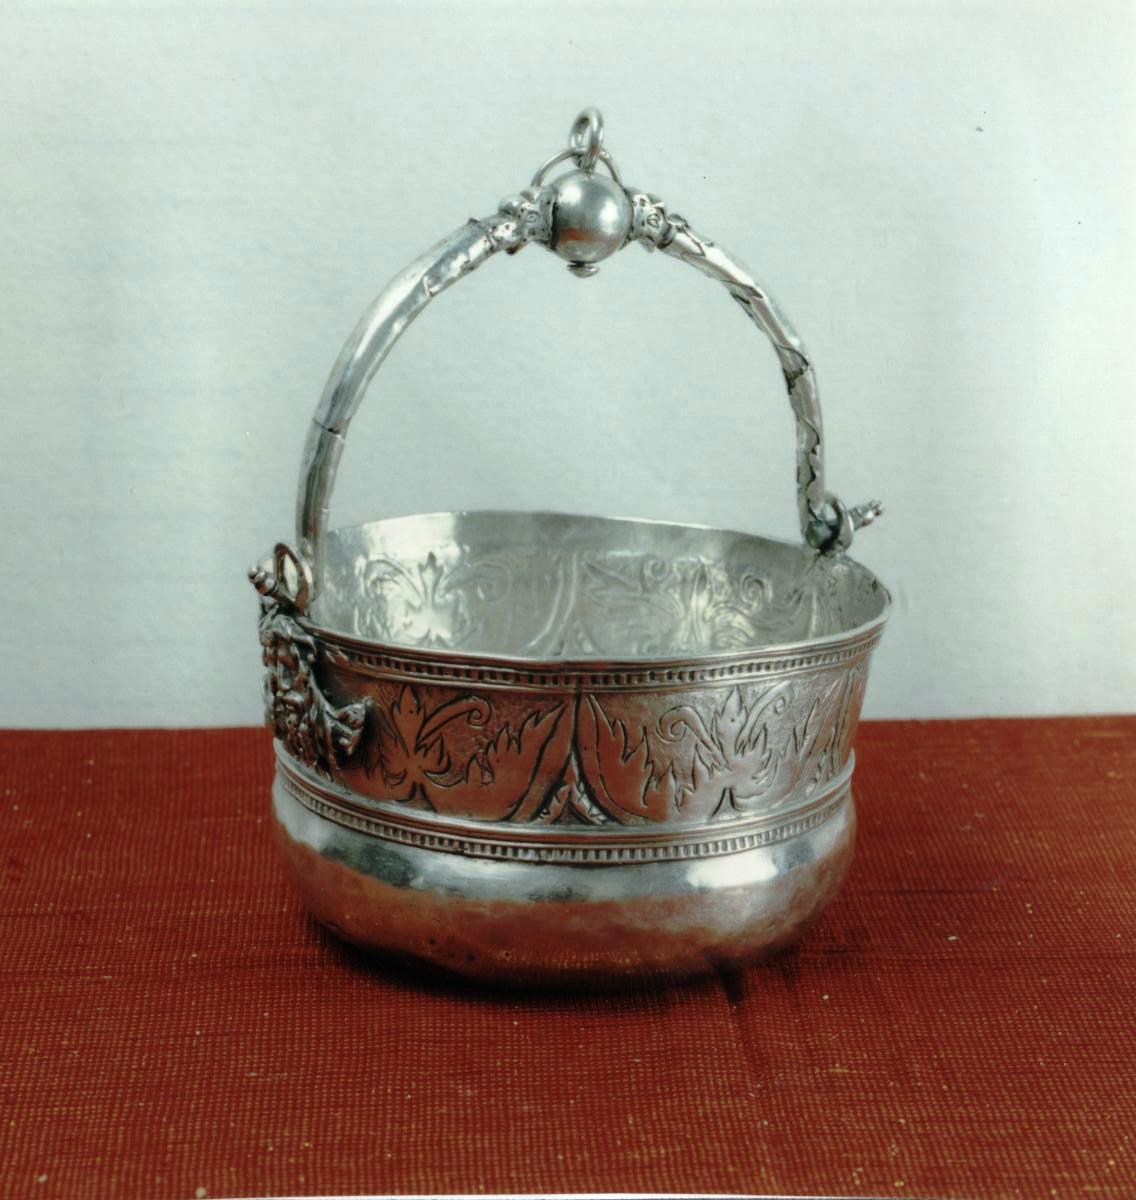 secchiello per l'acqua benedetta - bottega sarda (fine/inizio secc. XVI/ XVII)